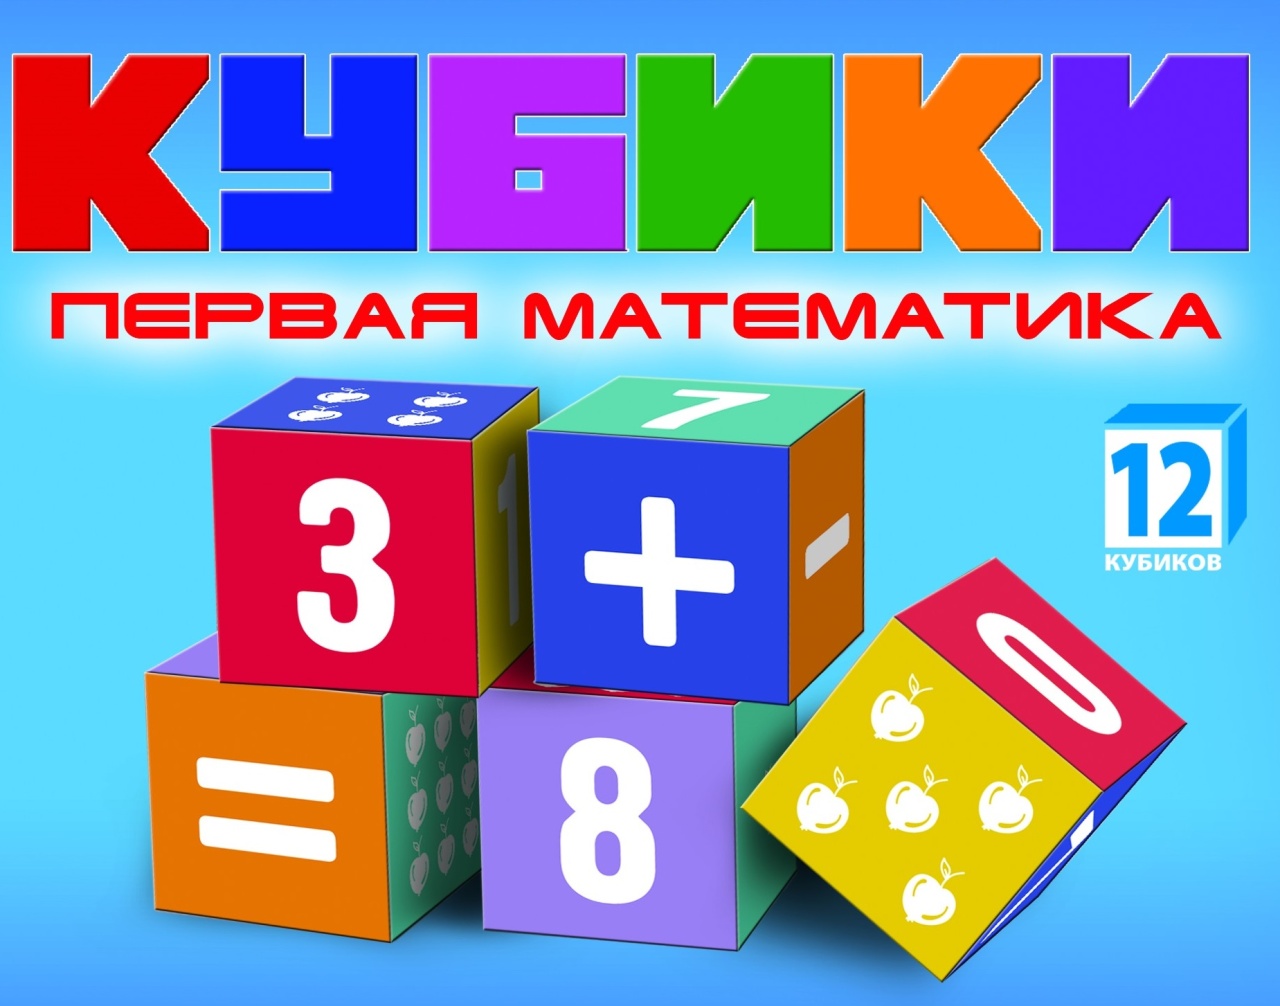 Набор кубиков "Первая математика" KB1607